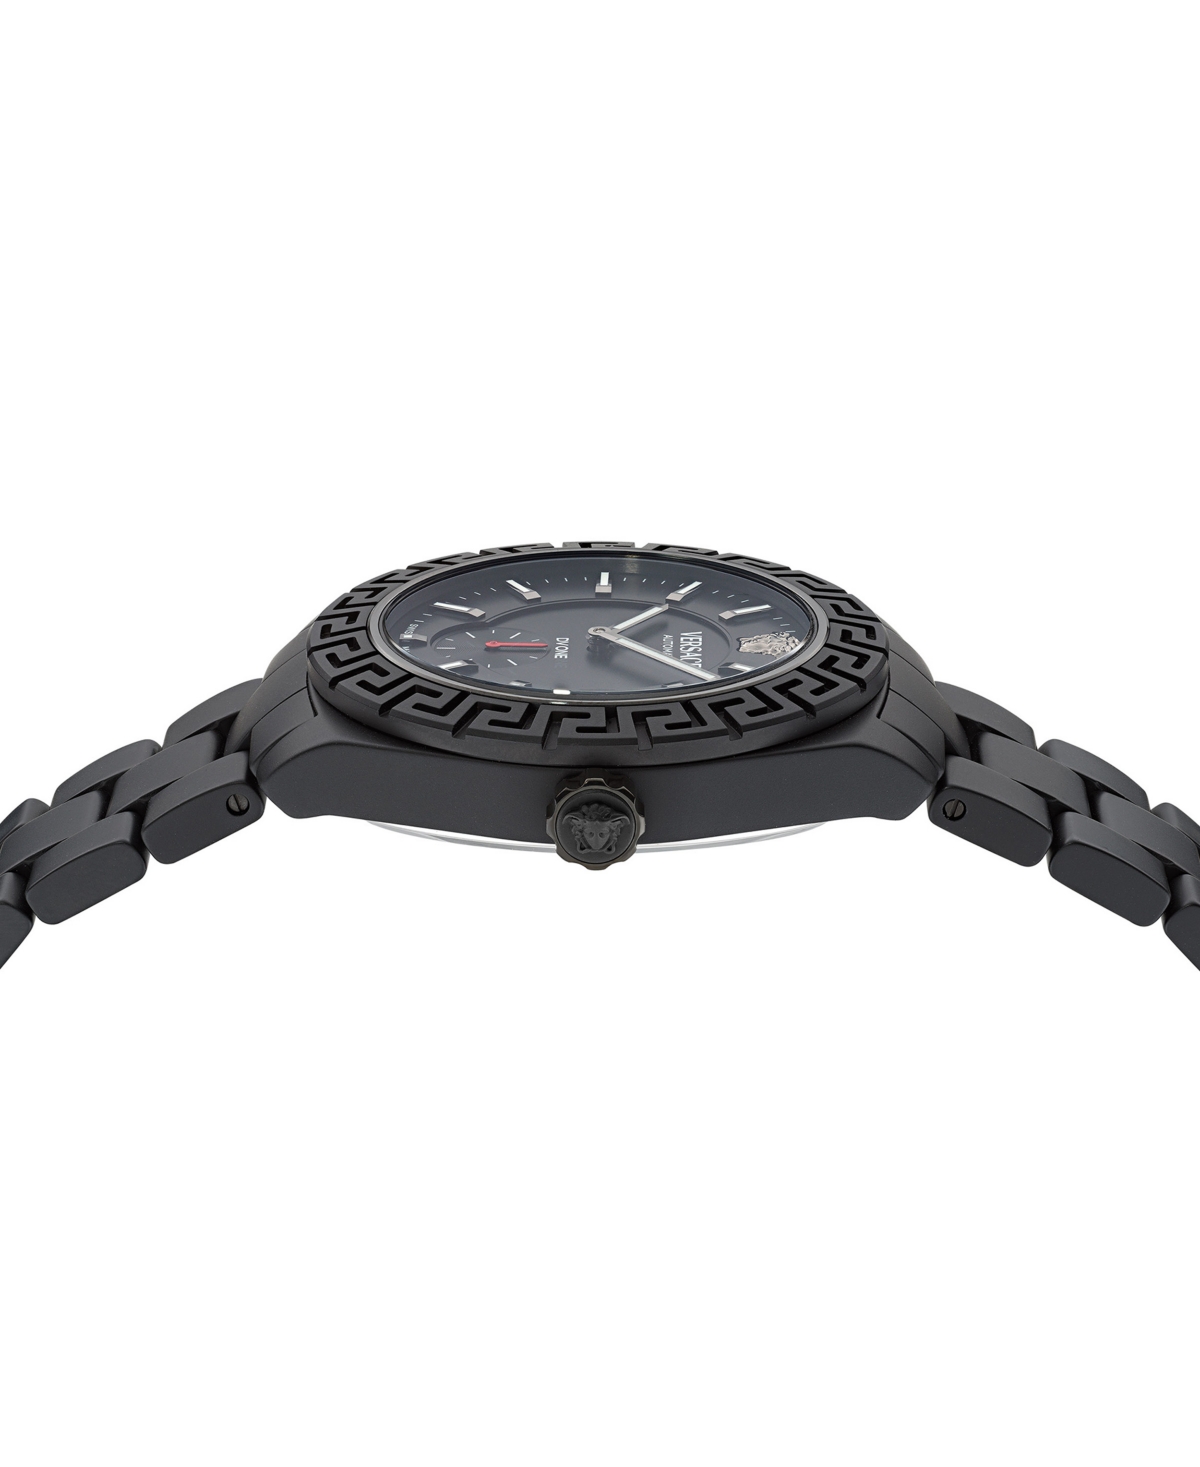 Shop Versace Men's Swiss Automatic Matte Black Ceramic Bracelet Watch 43mm